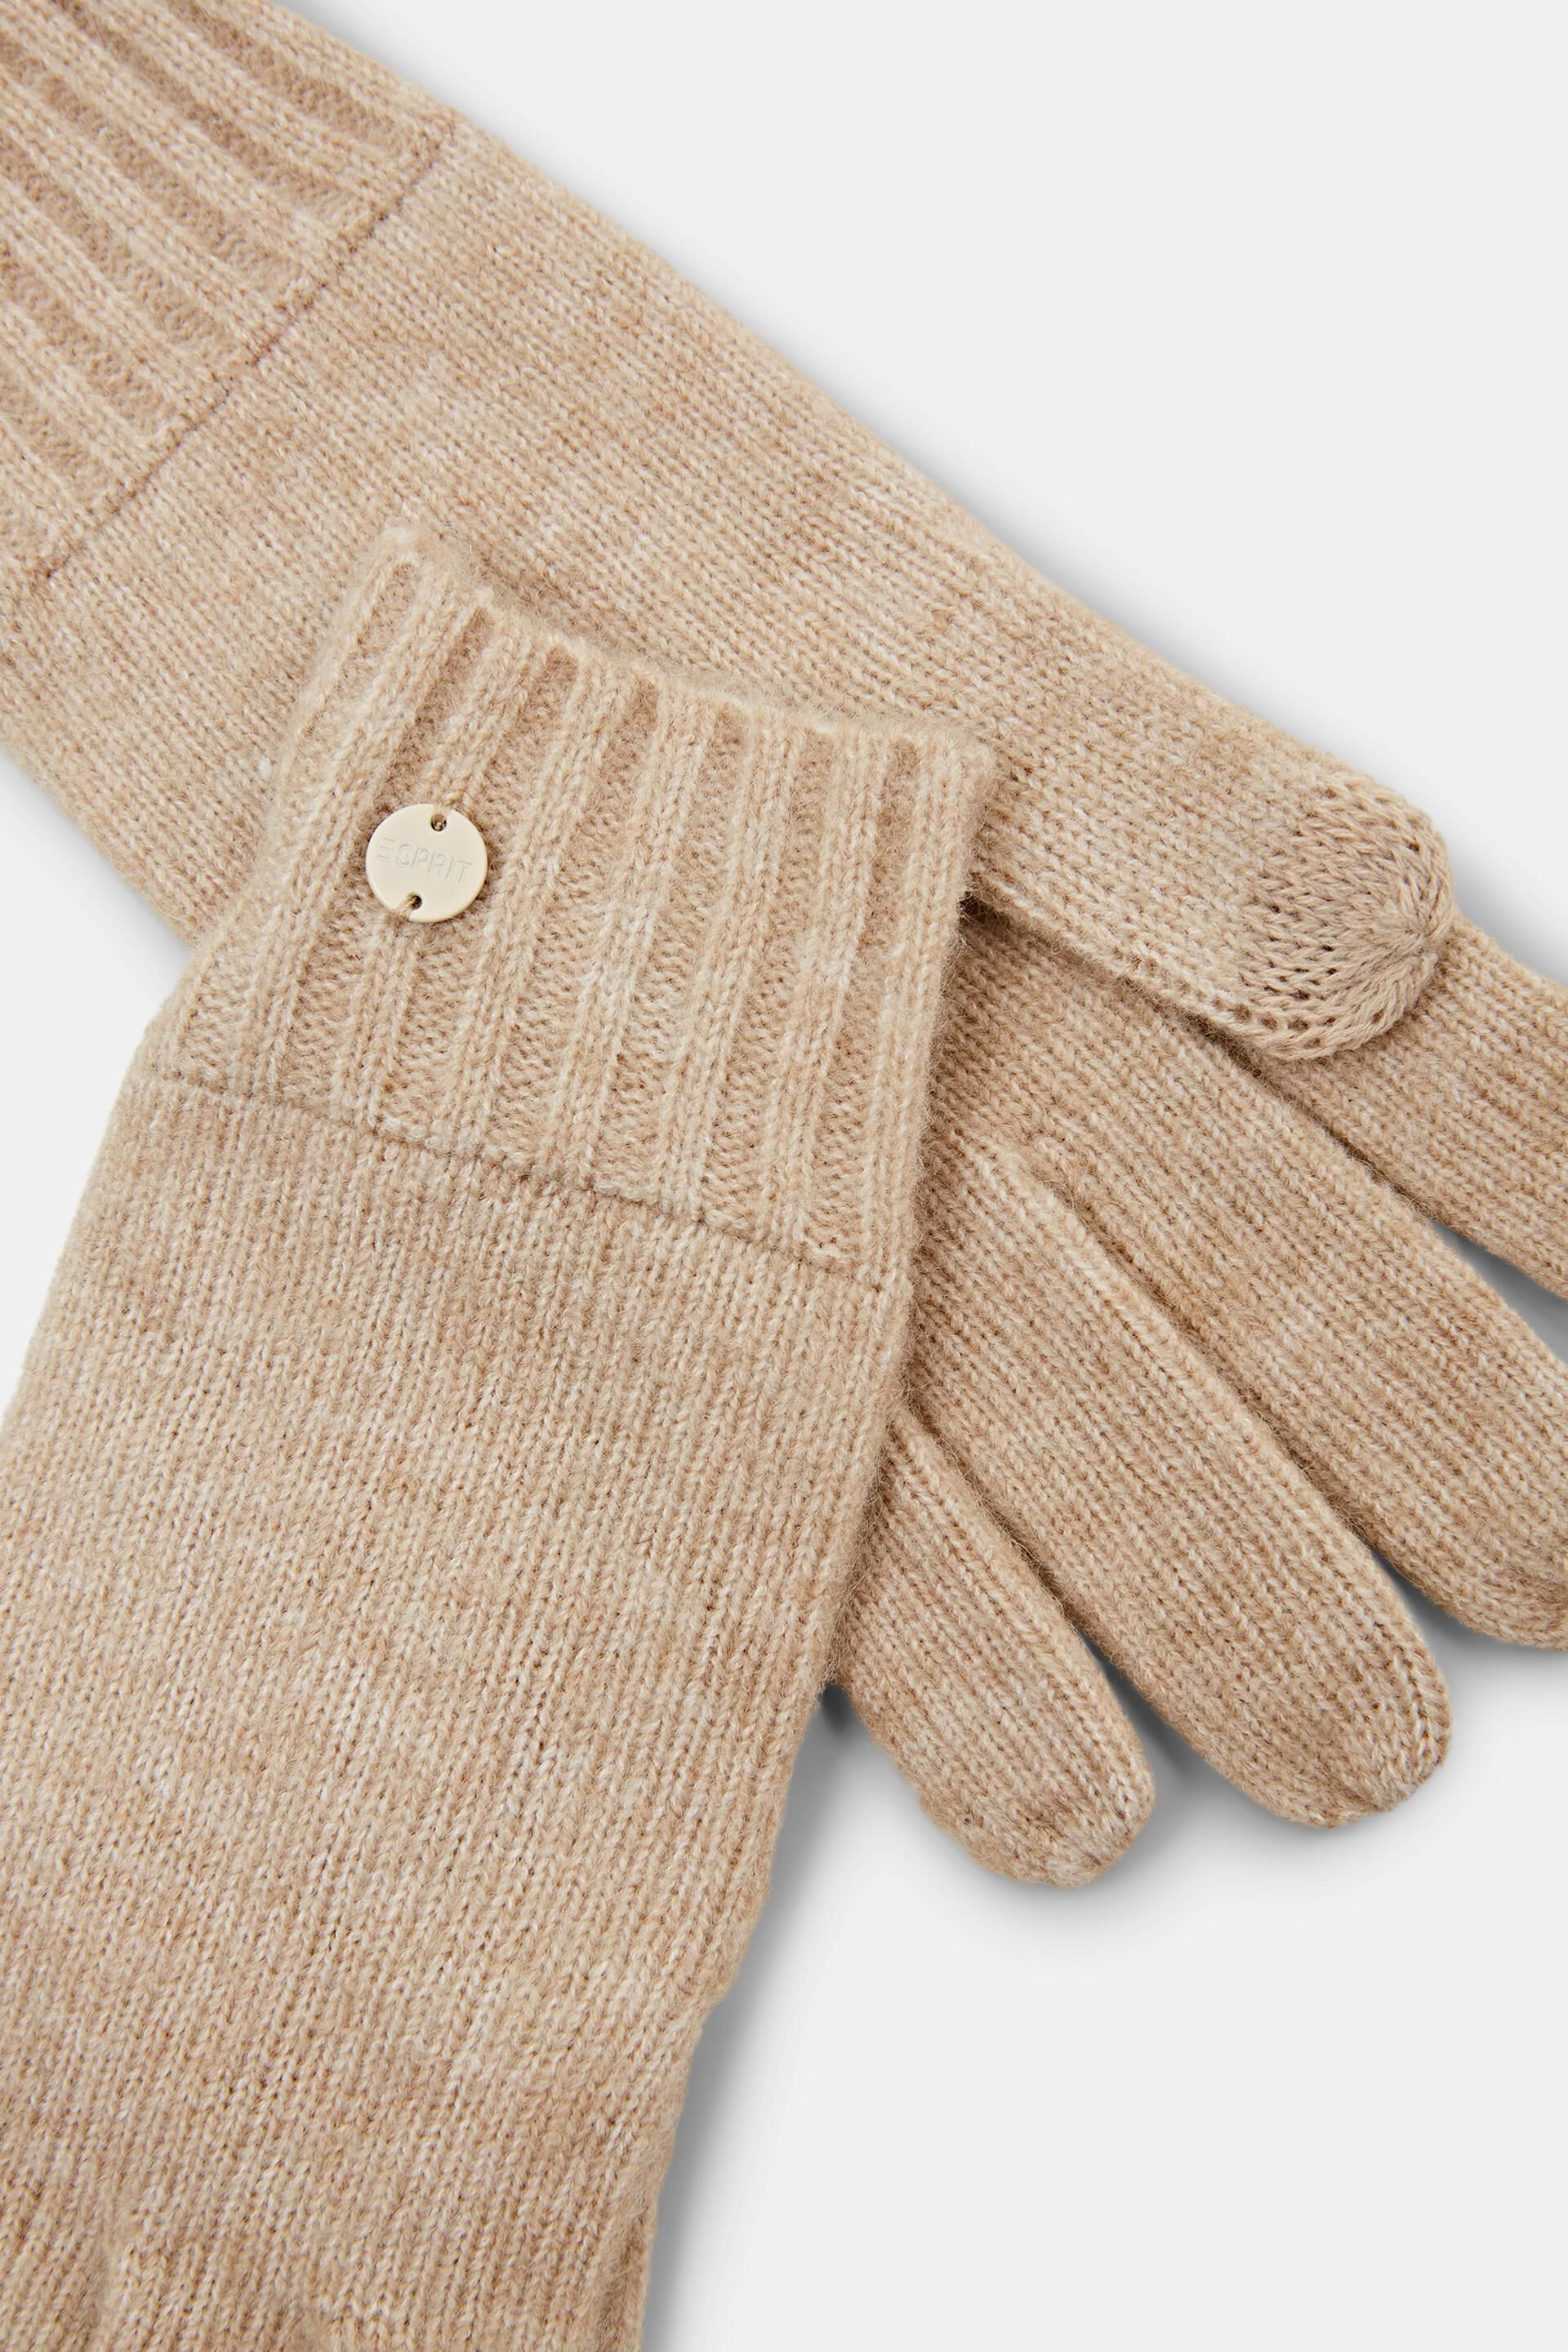 Esprit Online Store Handschuhe nicht aus Leder